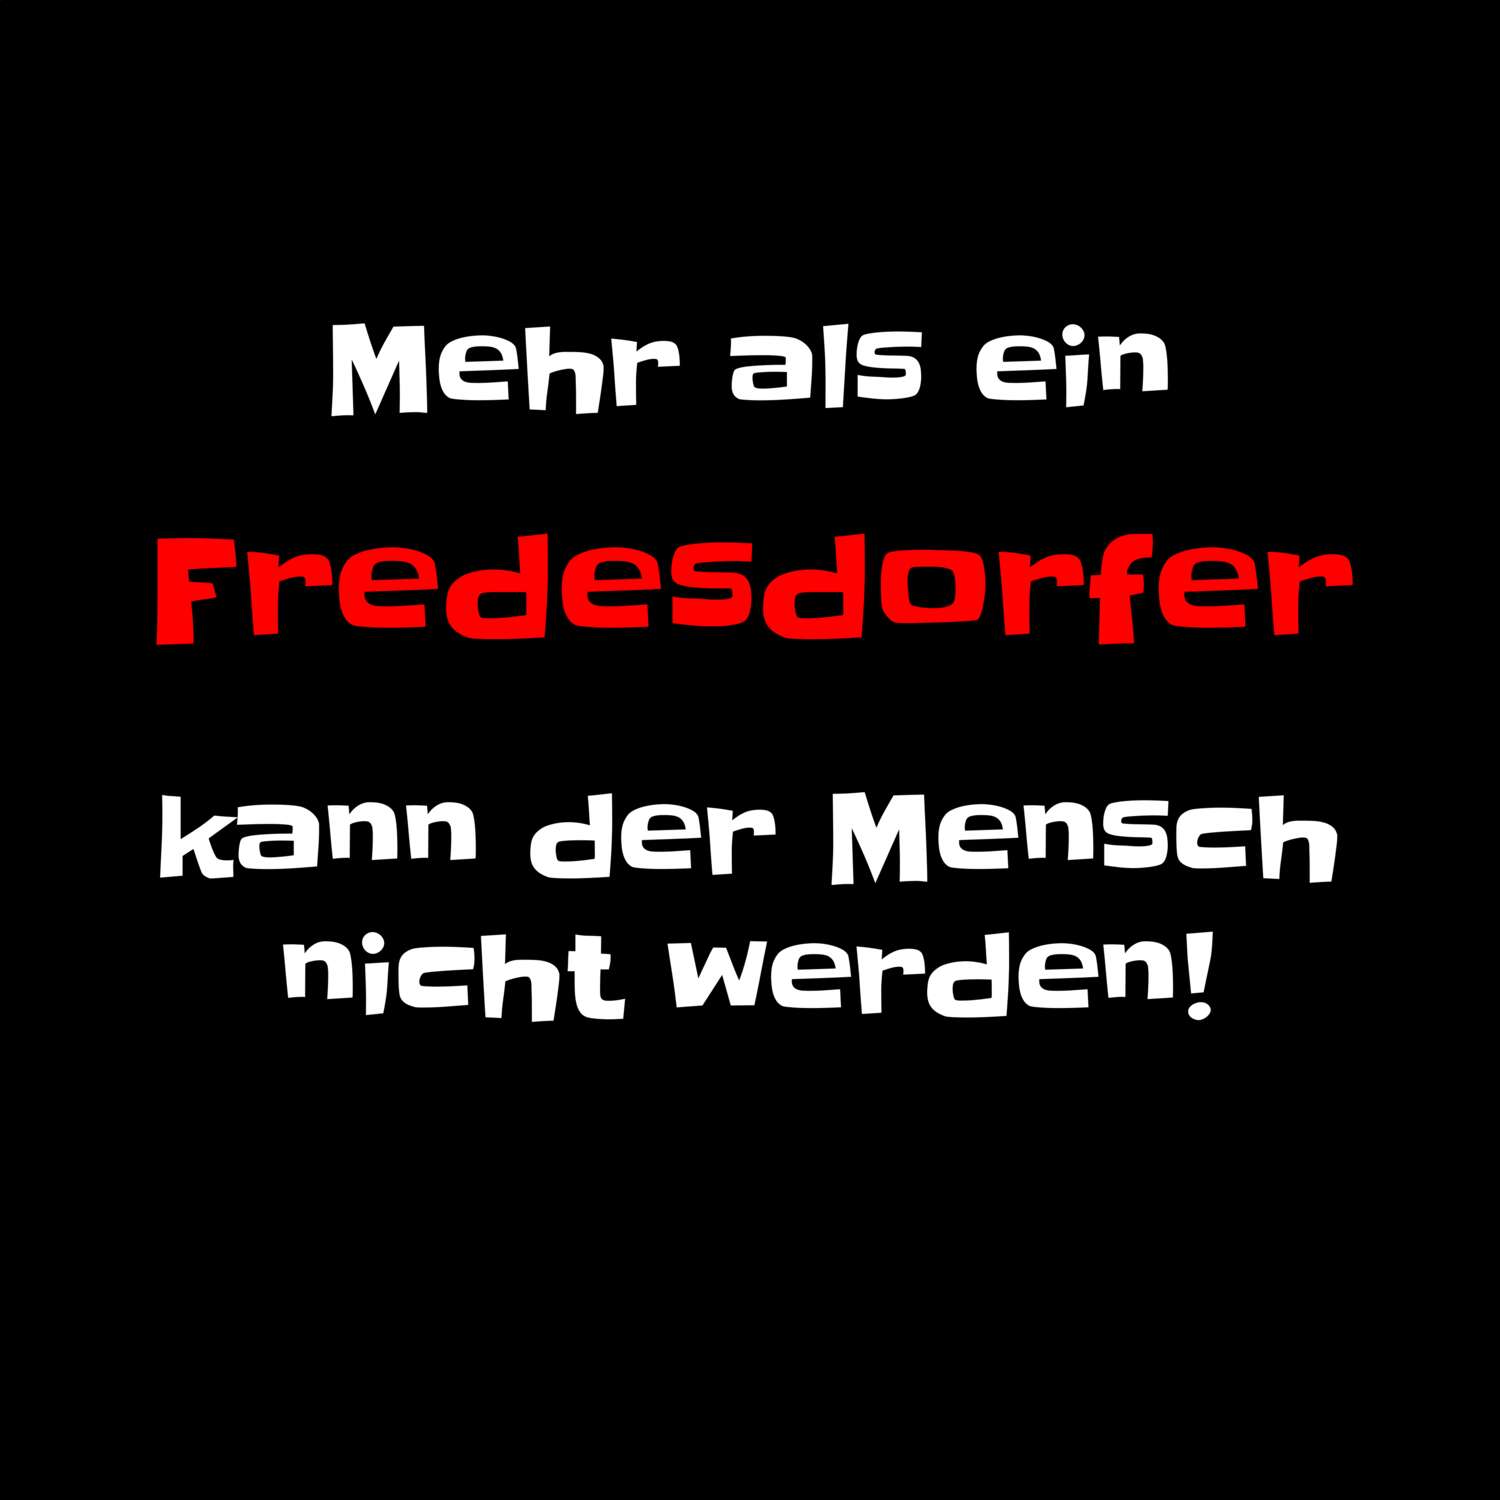 Fredesdorf T-Shirt »Mehr als ein«